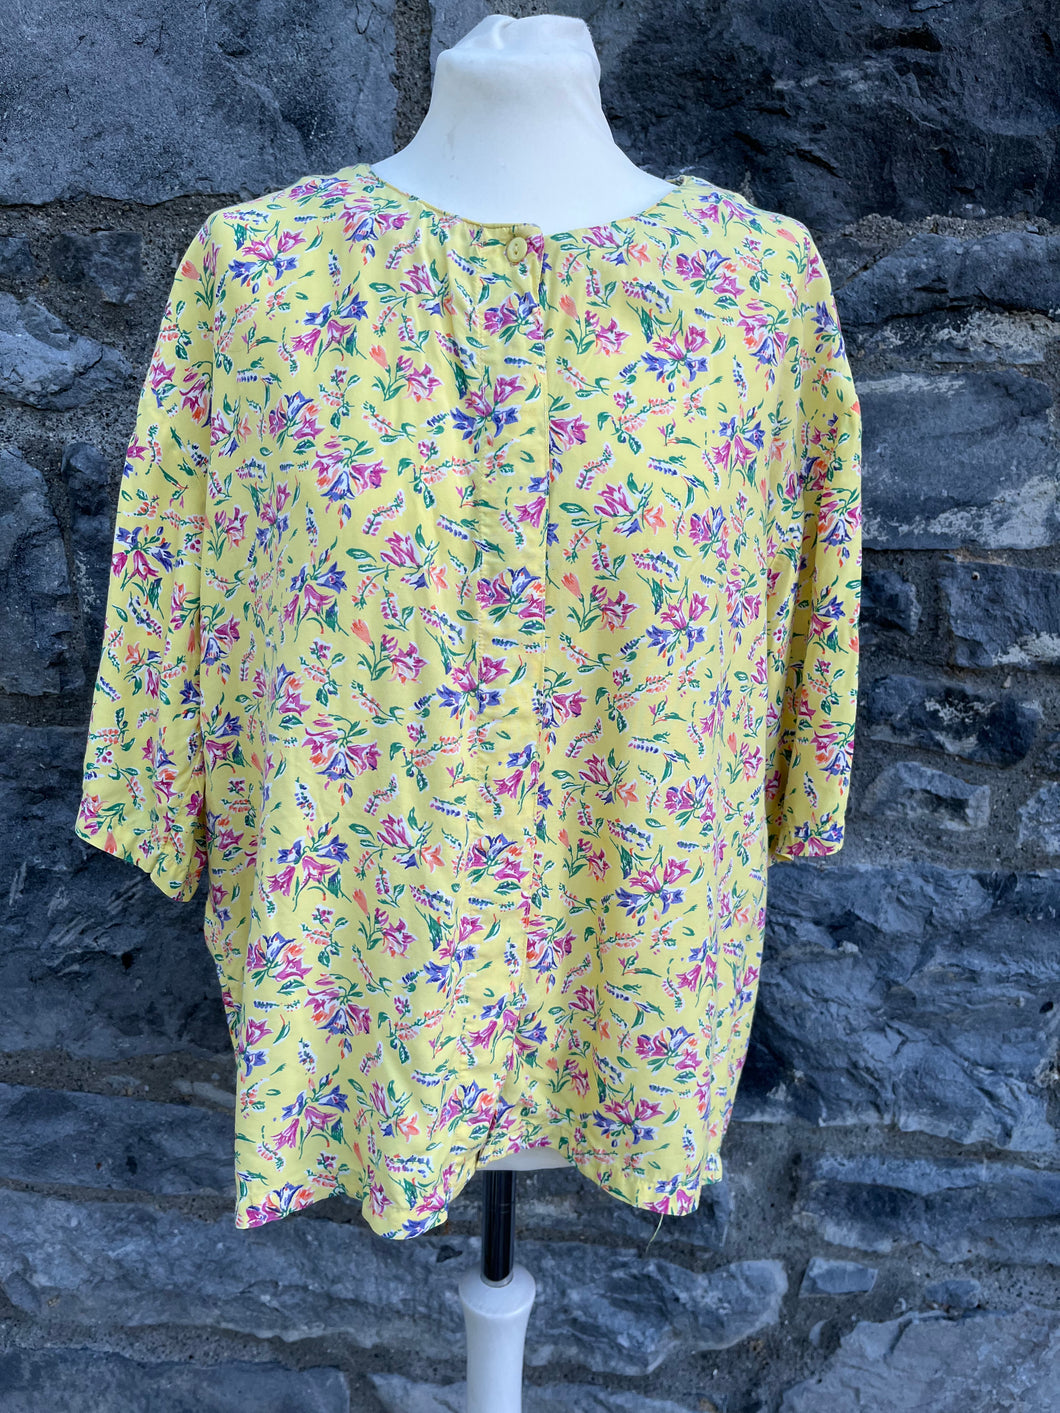 80s yellow floral shirt uk 12-14